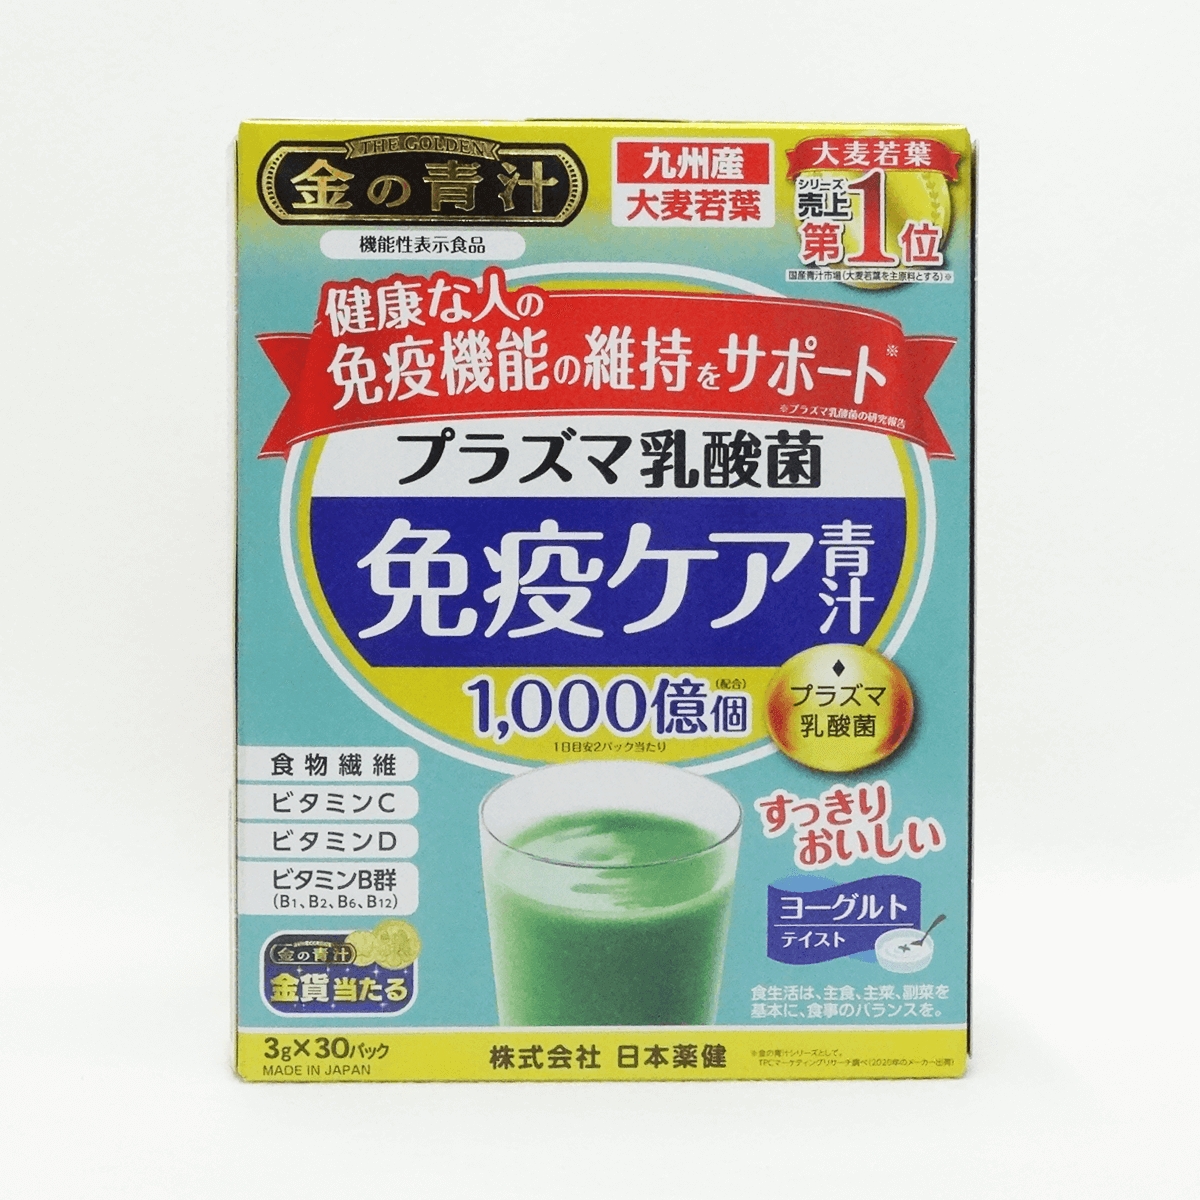 日本药健 金的青汁 Plasma乳酸菌免疫保健青汁 30包